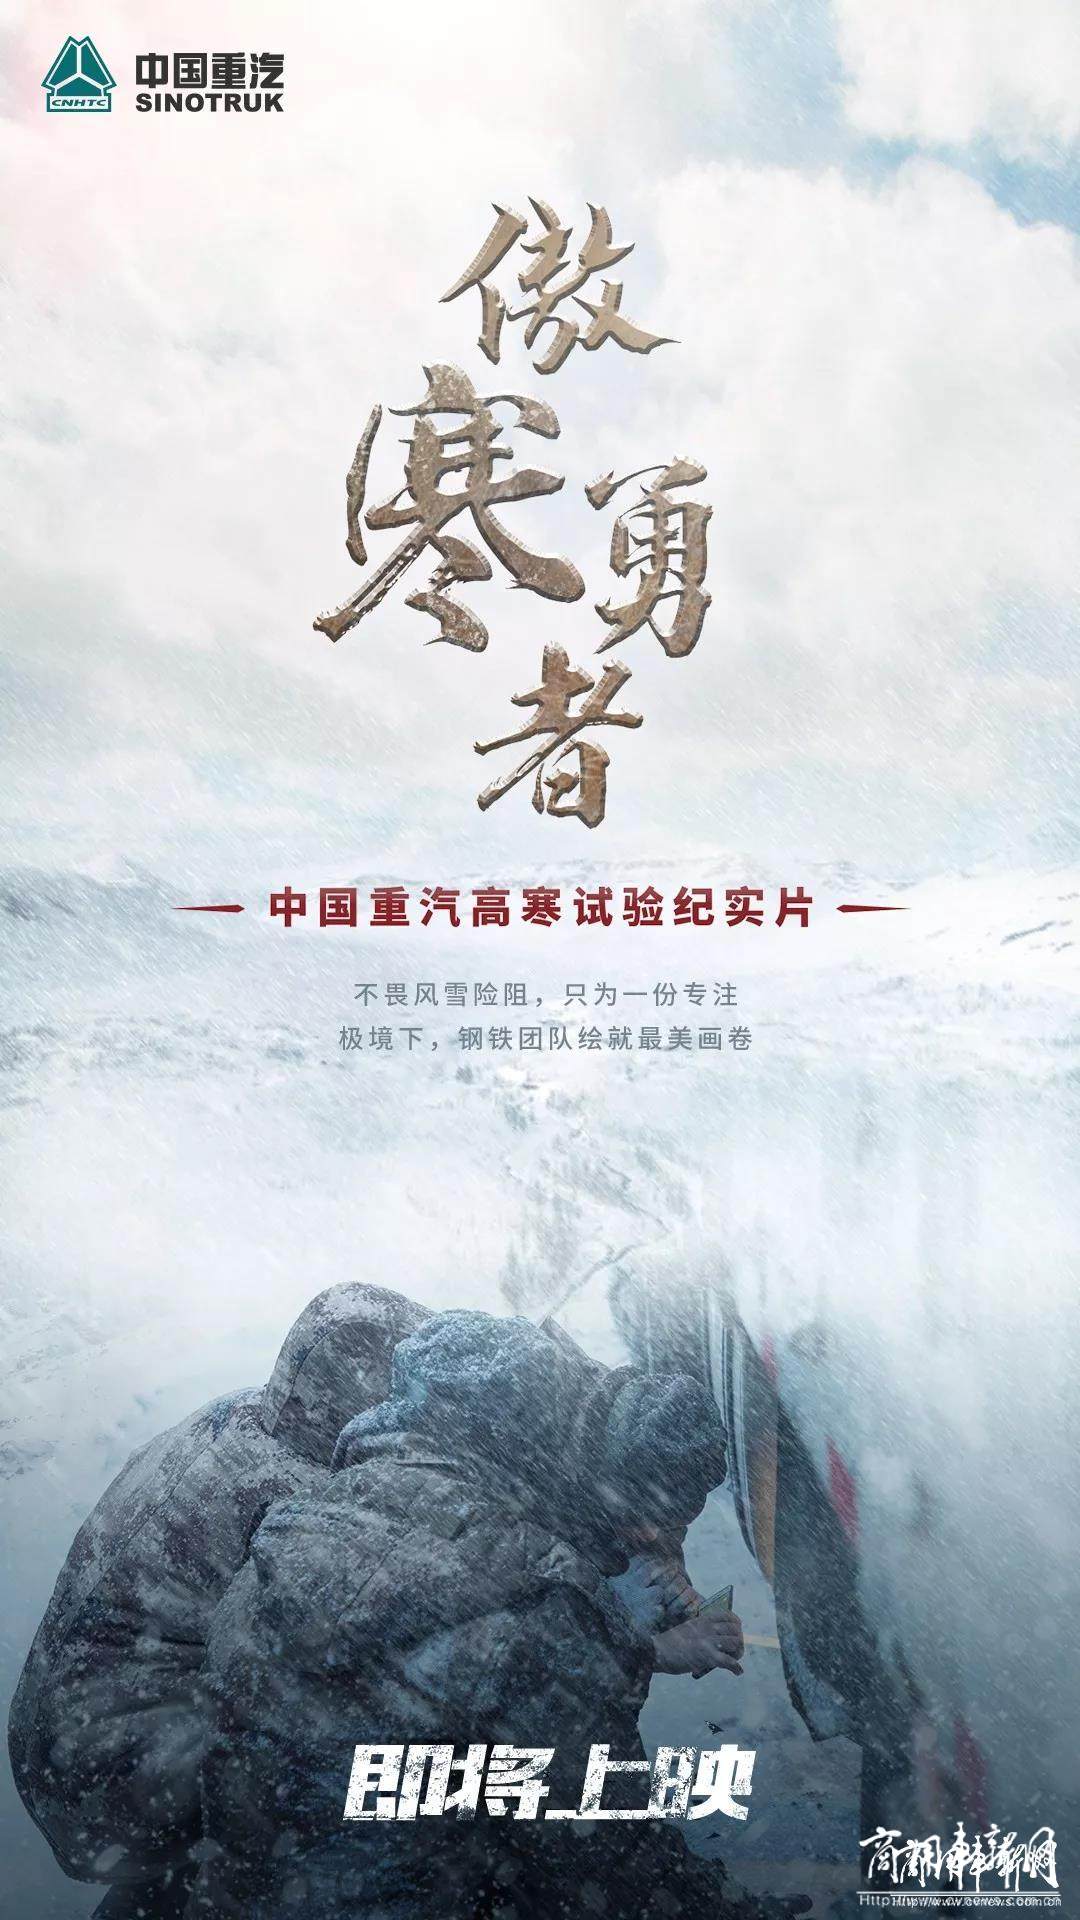 中国重汽高寒实验纪实片《傲寒勇者》即将上映